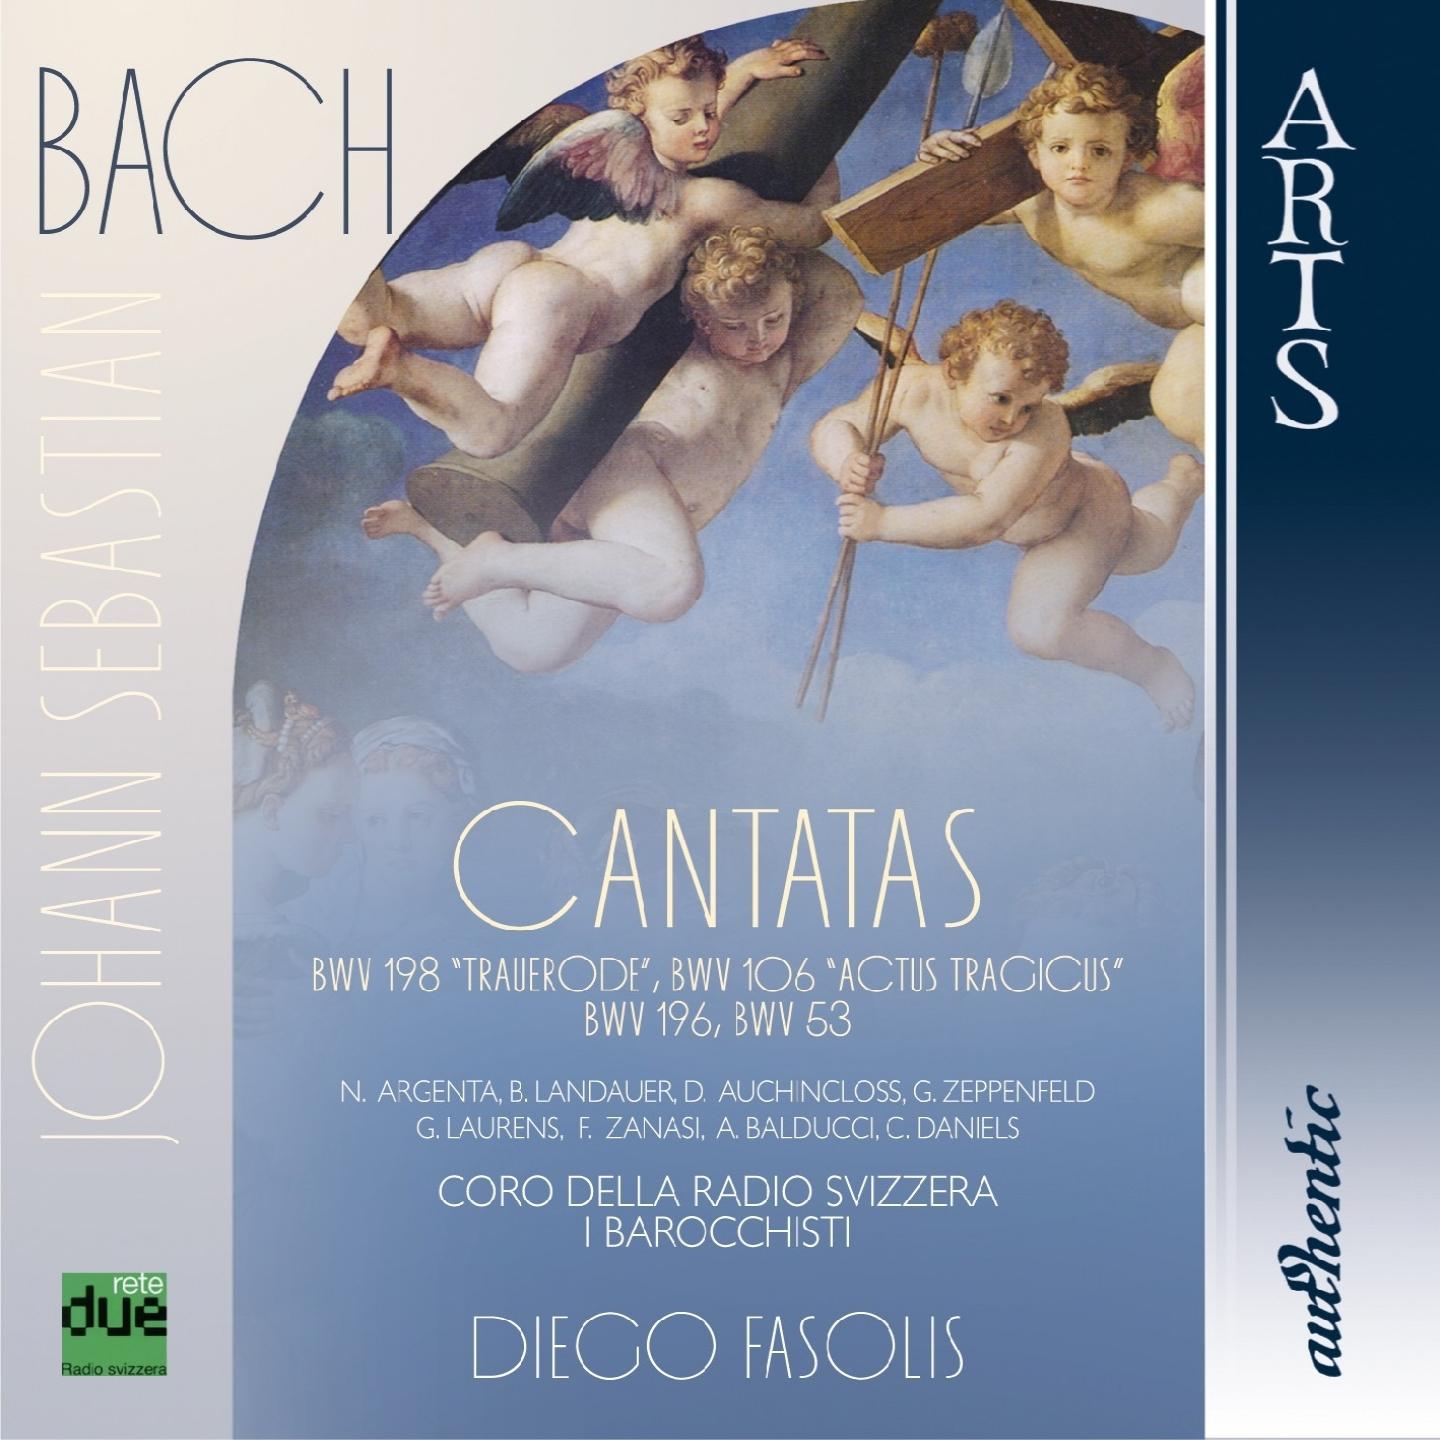 I Barocchisti - Cantata, Lass, Fürstin, lass noch einen Strahl, BWV 198, Trauerode: Part II, Chorus 